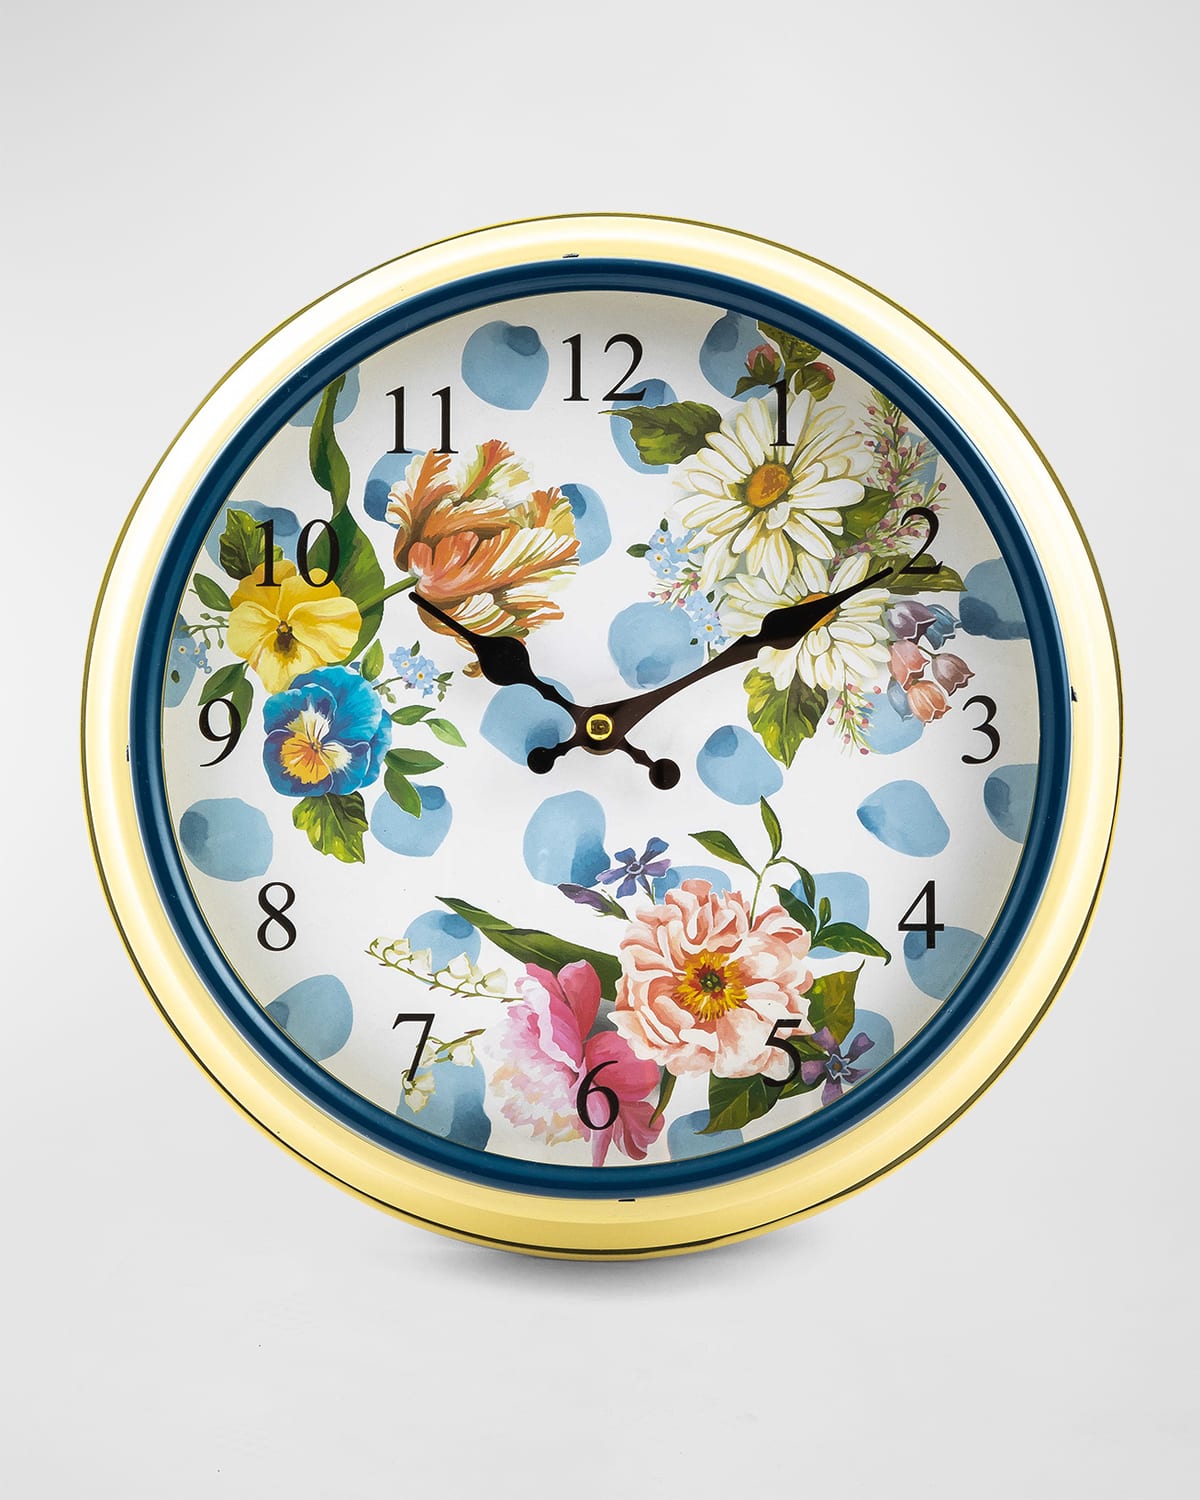 Mackenzie-childs Wildflowers Wall Clock